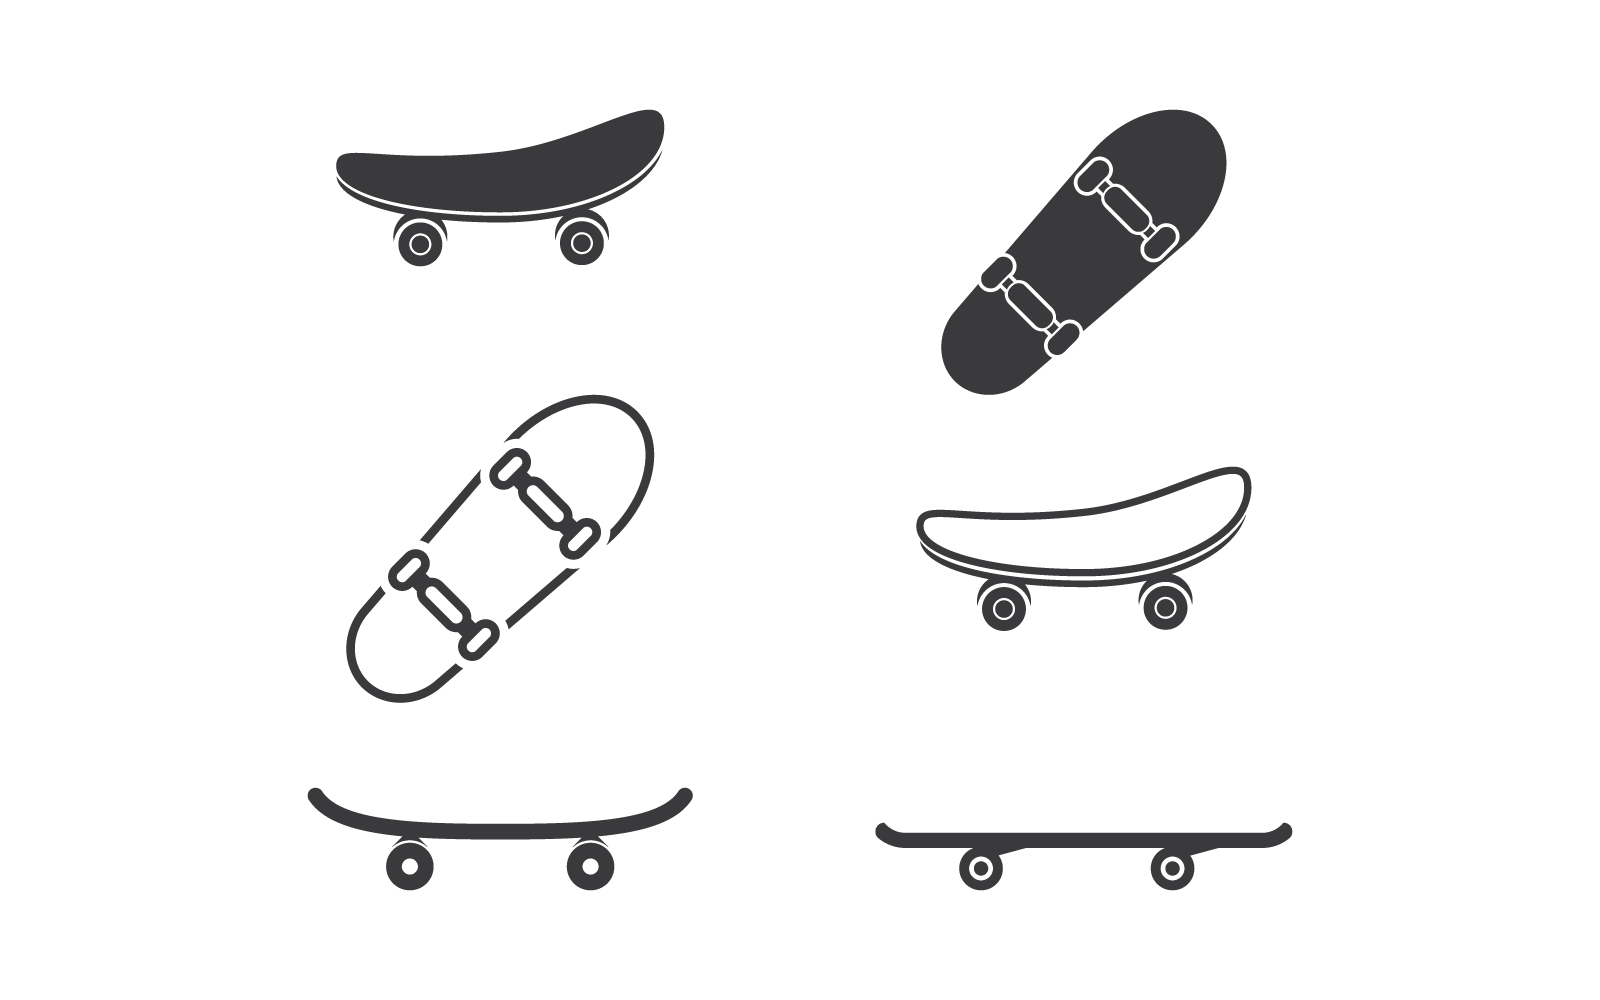 Grup of Skateboard logo icon isolated on white background